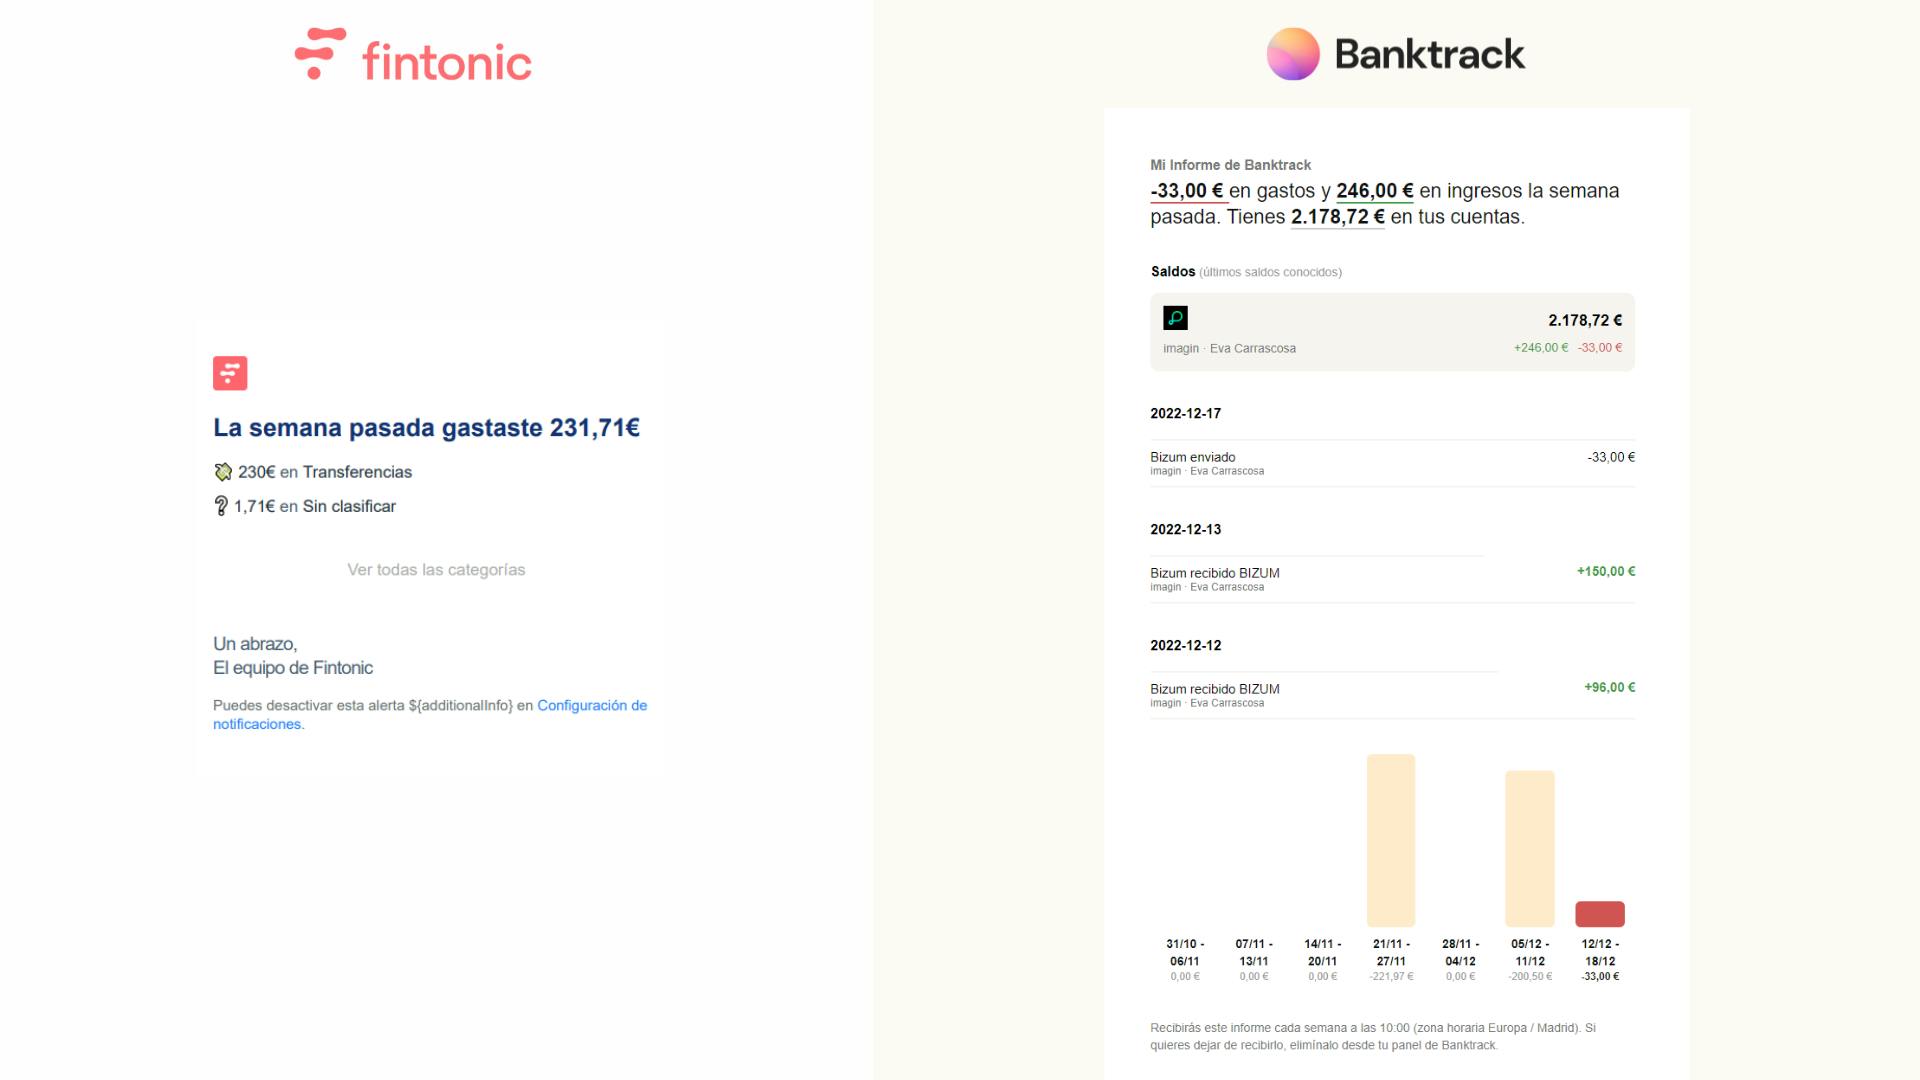 Captura de pantalla sobre el diseño de un informe recibido por Fintonic a la izquierda y a la derecha un informe bancario de Banktrack